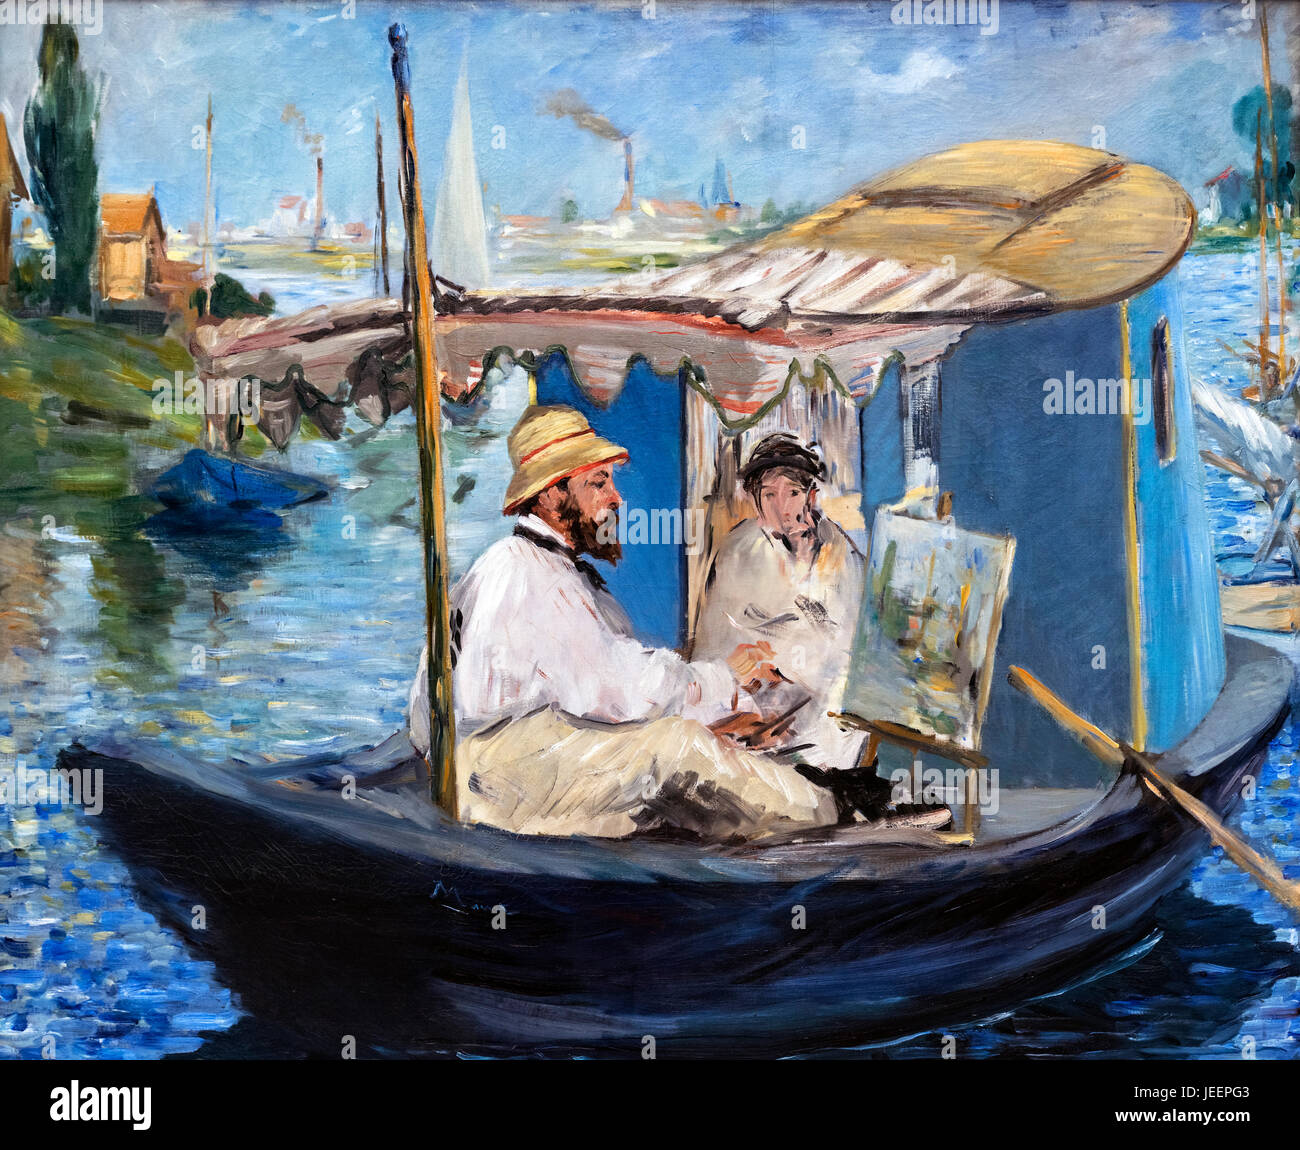 Monet peignant sur son bateau Studio par Edouard Manet (1832-1883). Portrait de l'impressionniste français Claude Monet par Edouard Manet, 1874. Banque D'Images